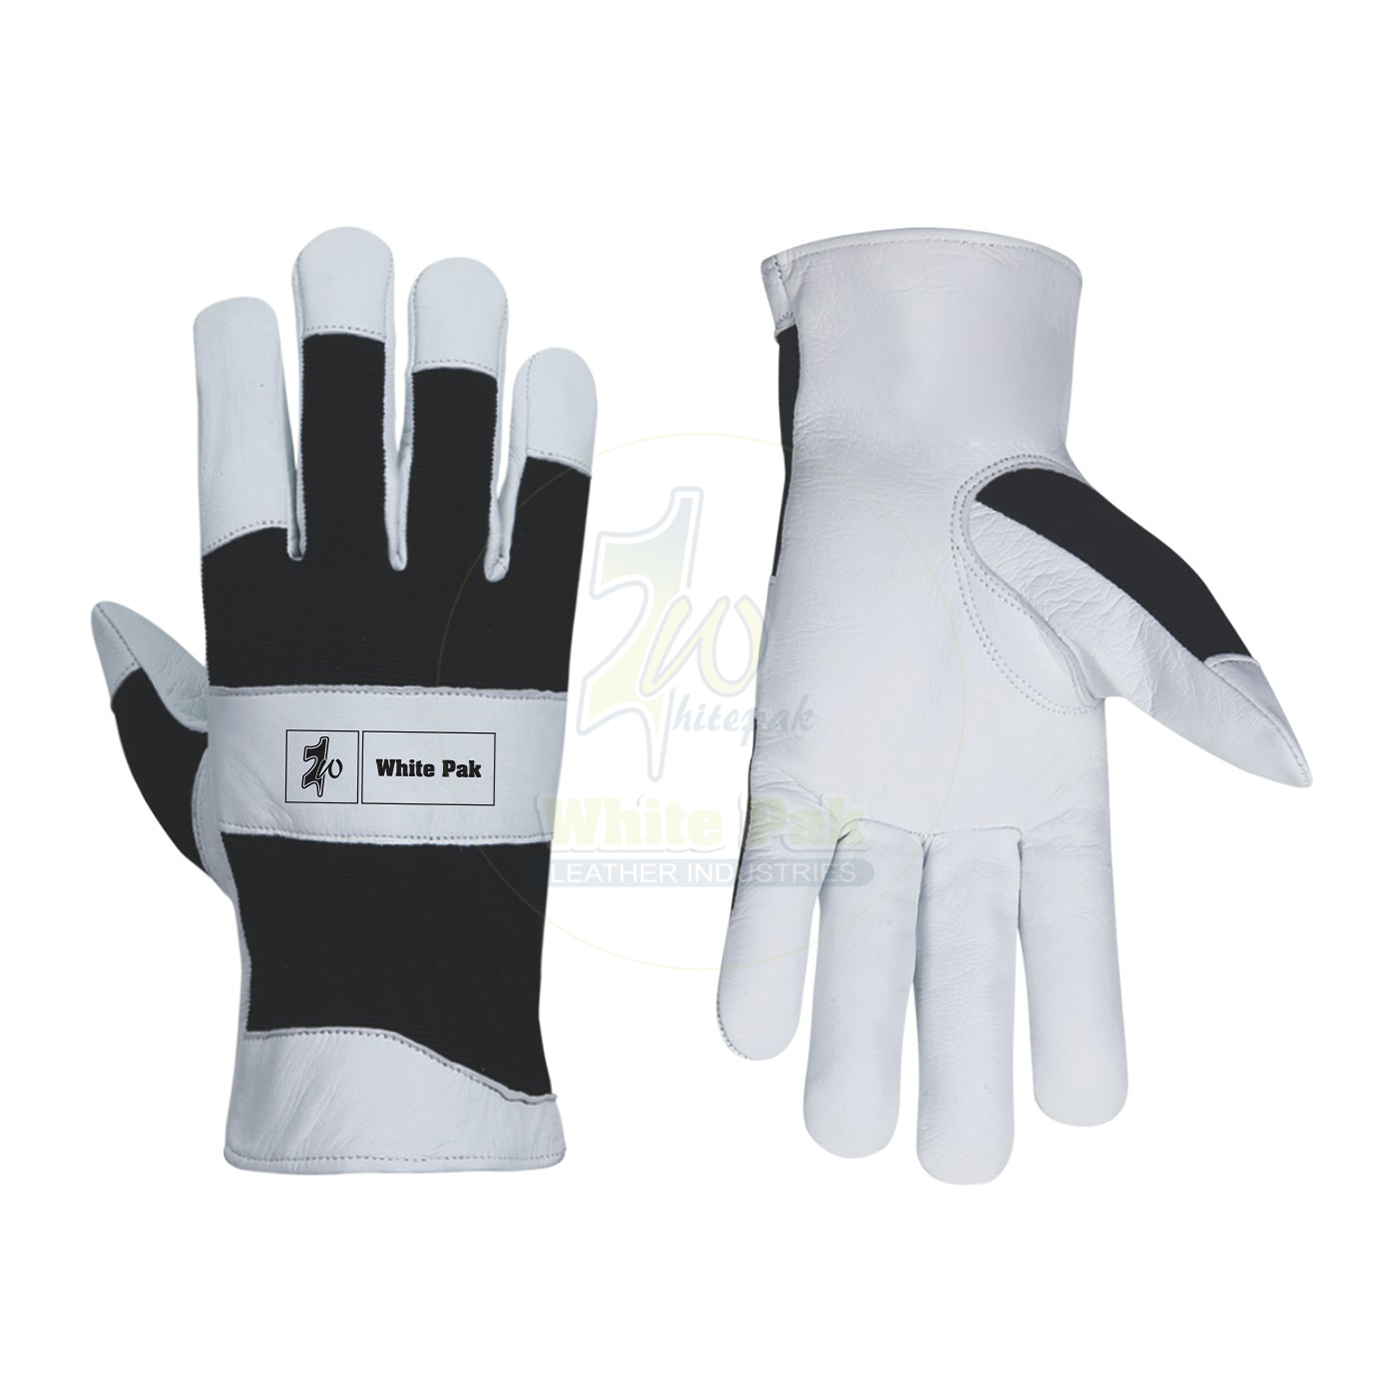 Black Assembling Gloves